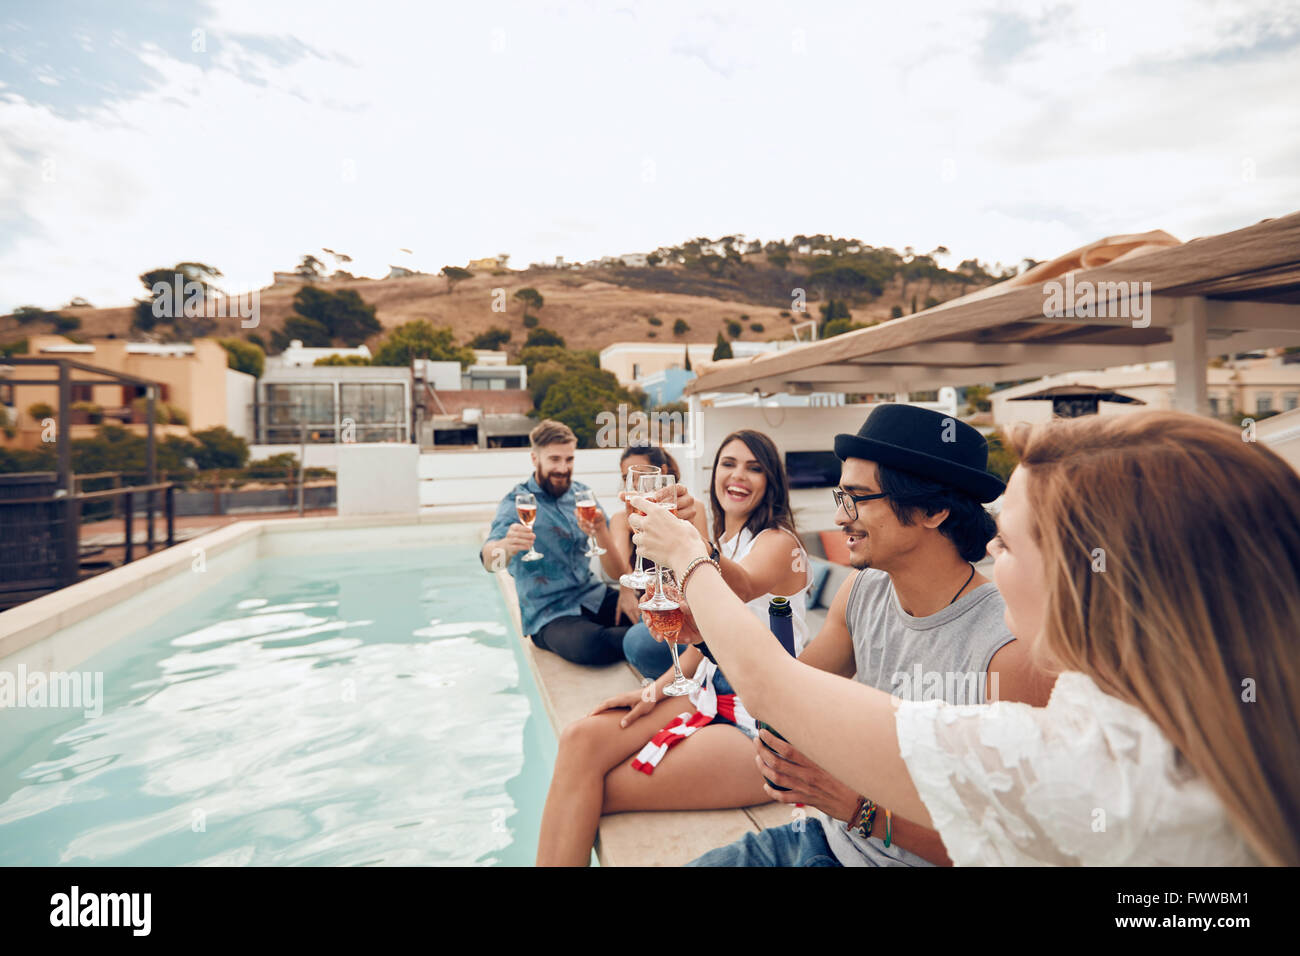 Im Freien Schuss glücklich junger Menschen sitzen auf dem Rand des Pools mit einer festlichen Toast. Freunde heben einen Toast während einer Stockfoto